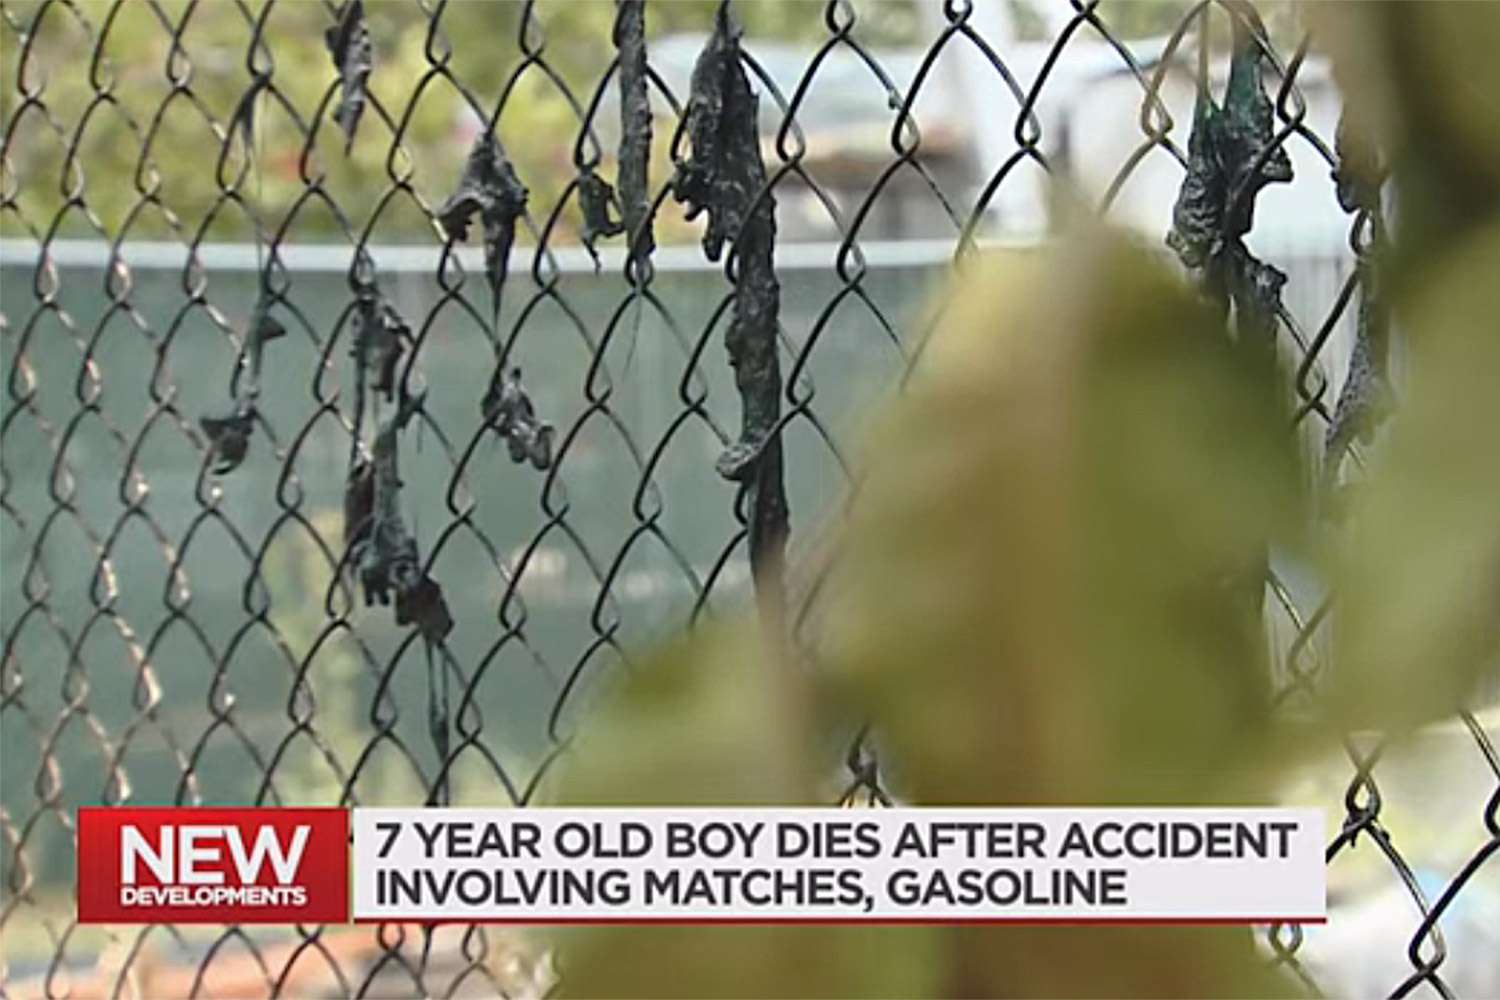 Menino de 7 anos morre depois de incendiar-se acidentalmente enquanto brincava com fósforos